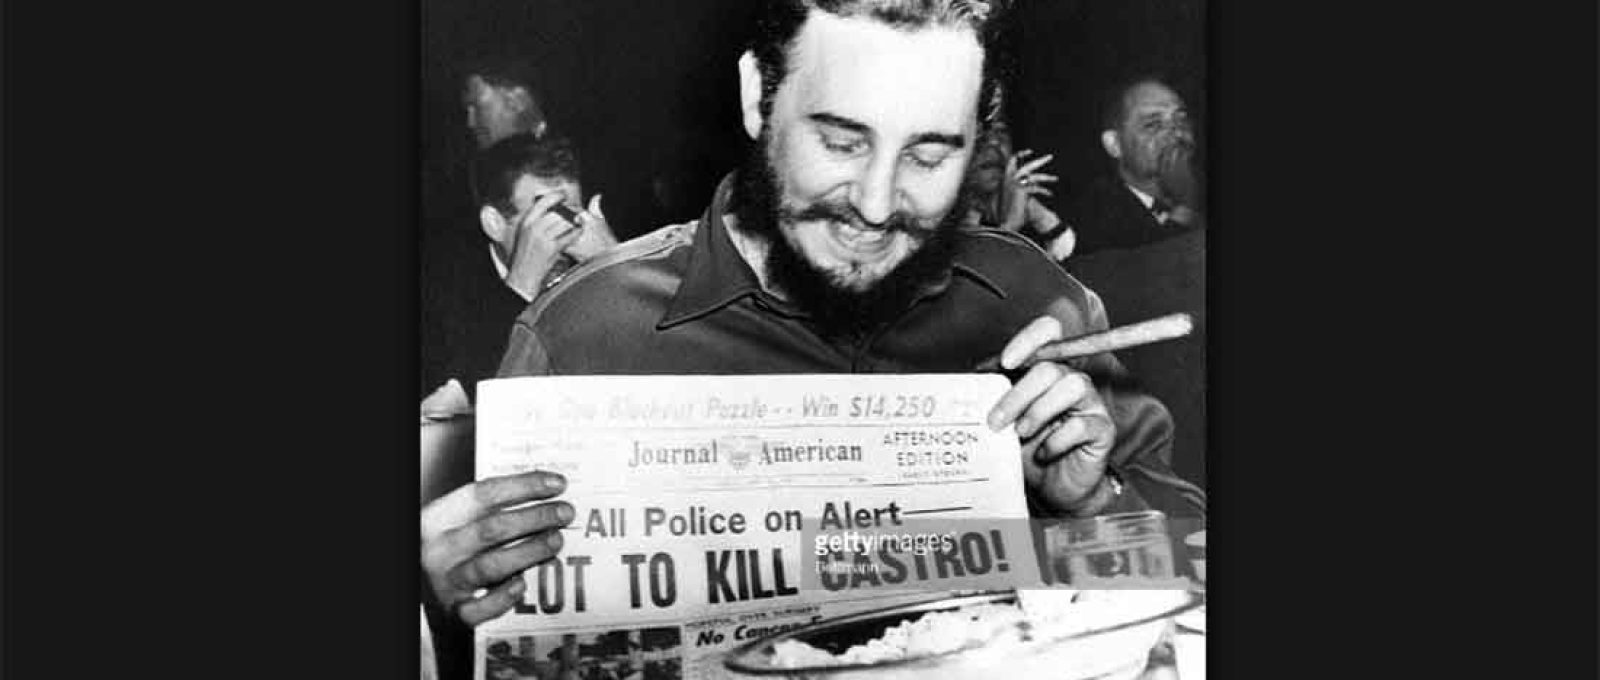 Fidel Castro diverte-se com as notícias de um plano para seu assassinato, por volta de 1959 (Foto: Bettmann/Getty Images).